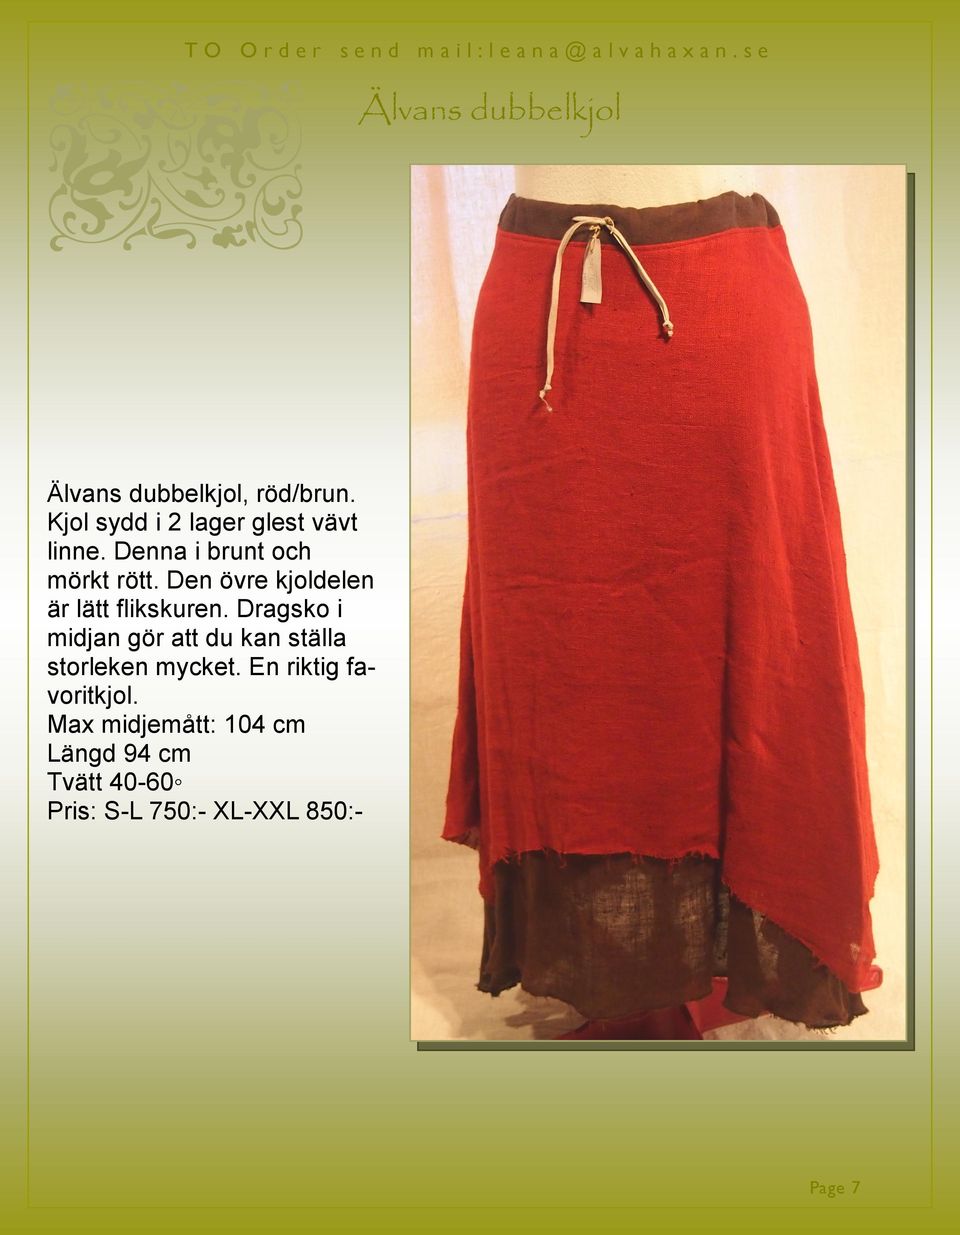 Denna i brunt och mörkt rött. Den övre kjoldelen är lätt flikskuren.